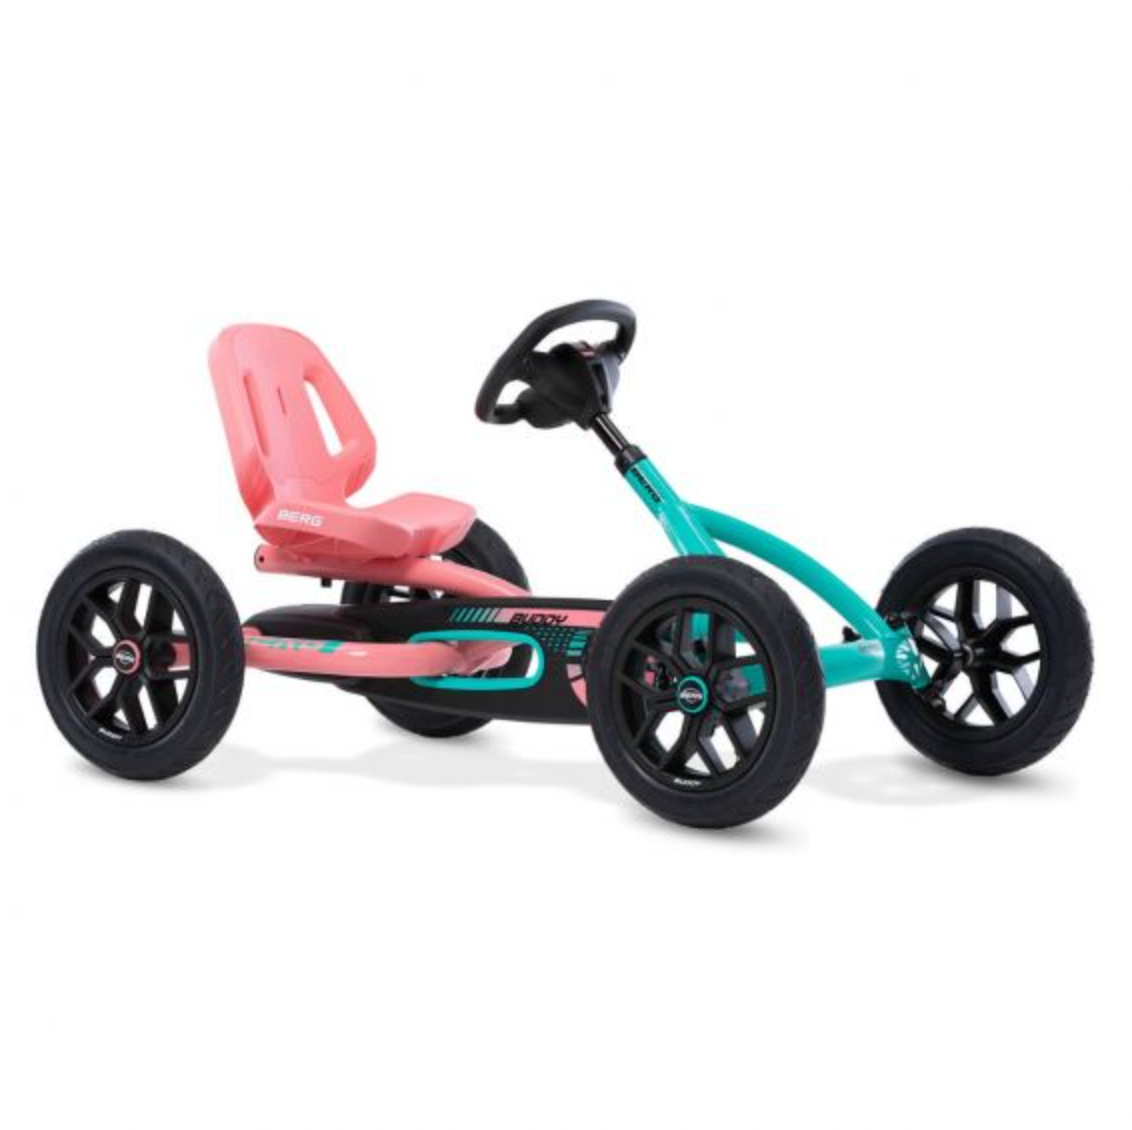 BERG Buddy Lua Pedal Kart - WePlayAlot